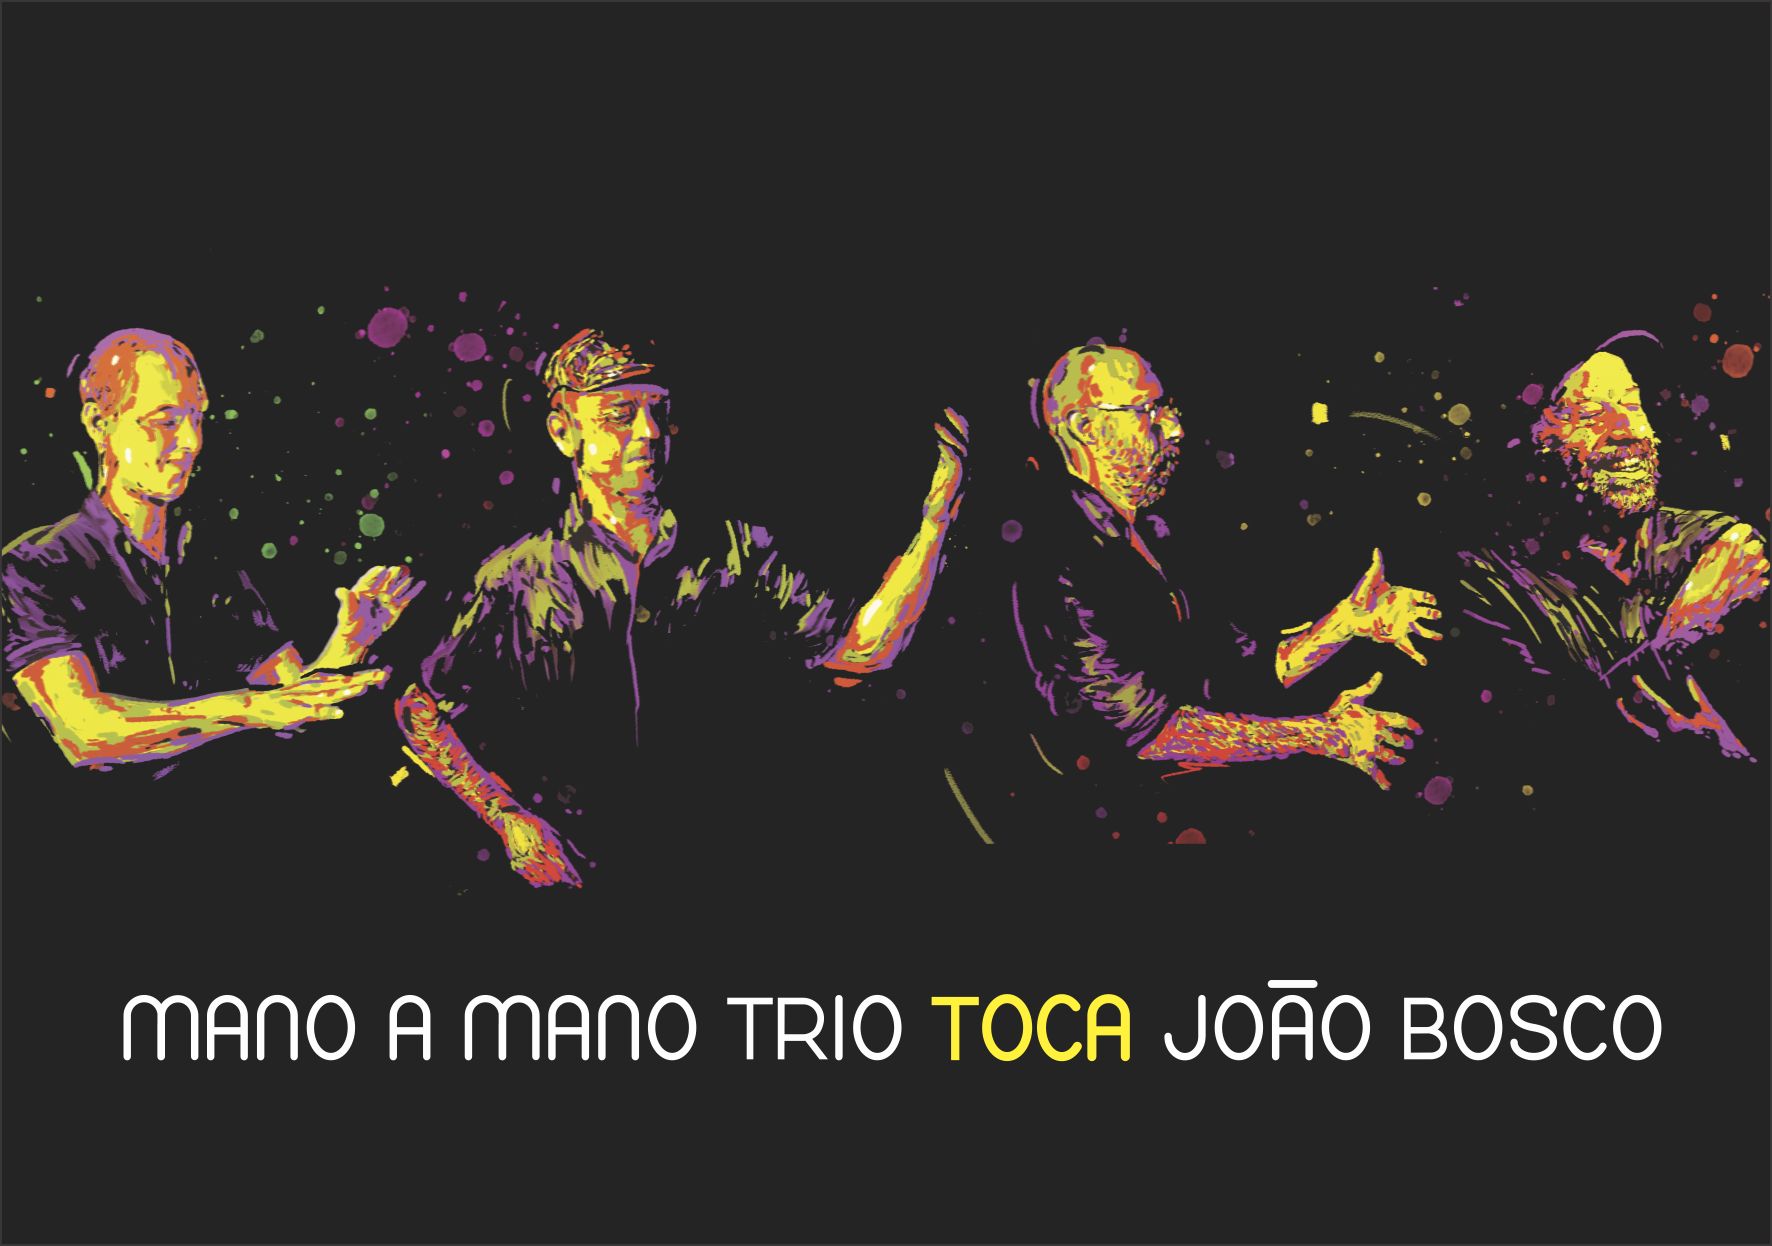 mano a mano trio toca joão bosco 2019 dvd capa horizontal